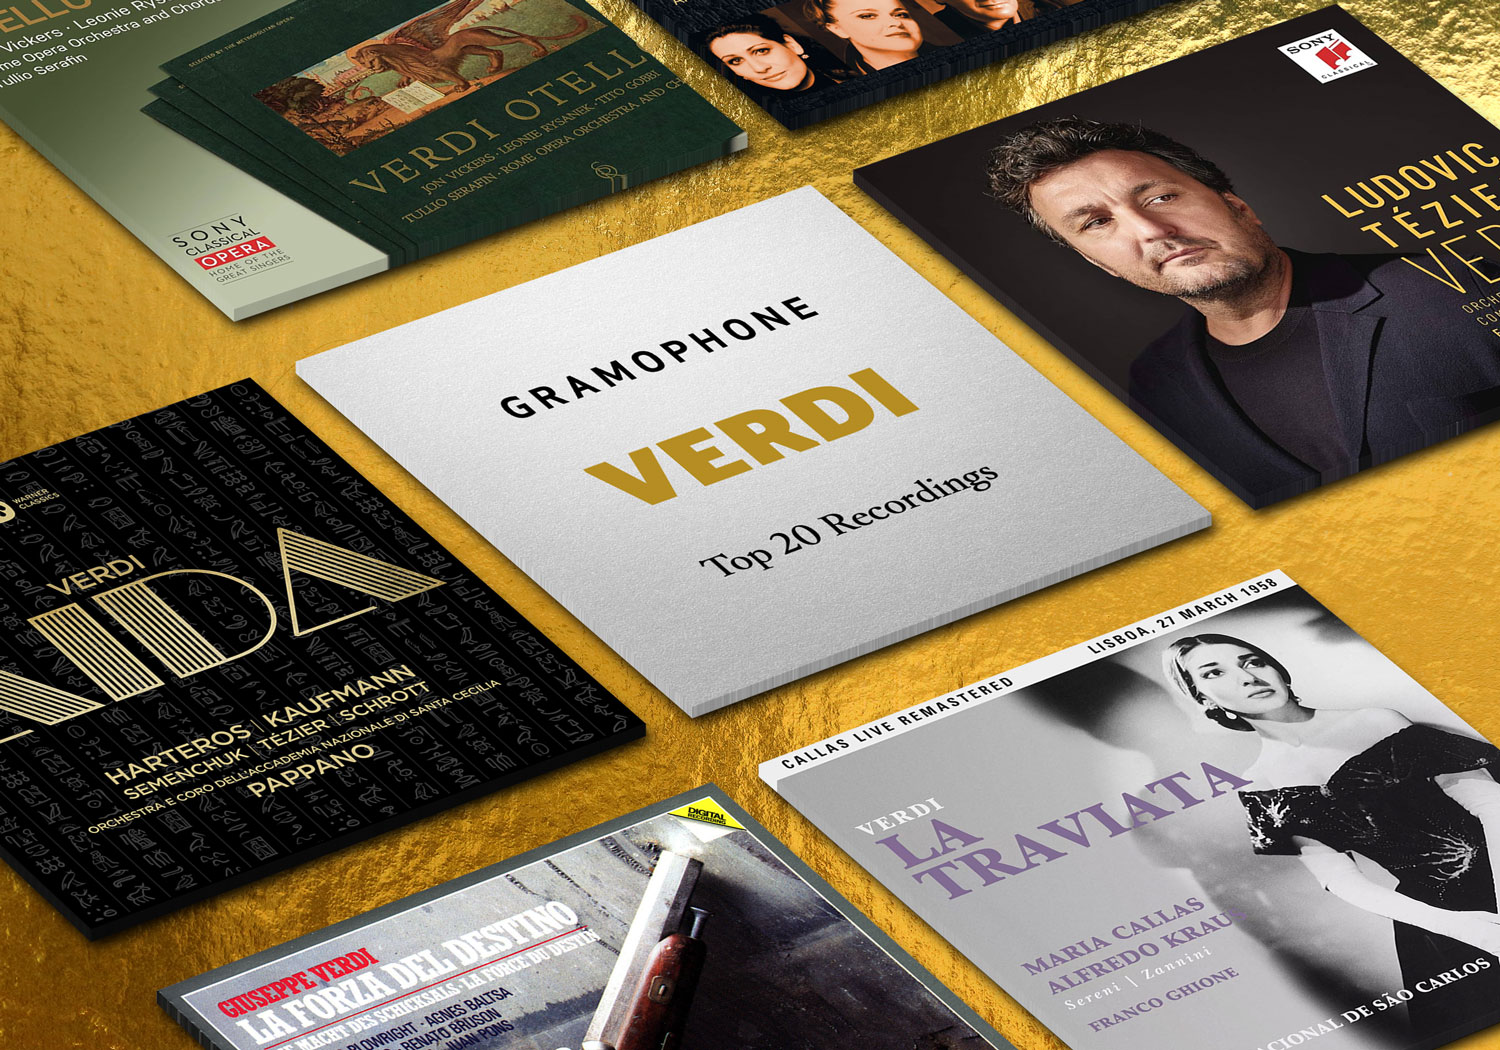 Top 20 Verdi Recordings | Gramophone